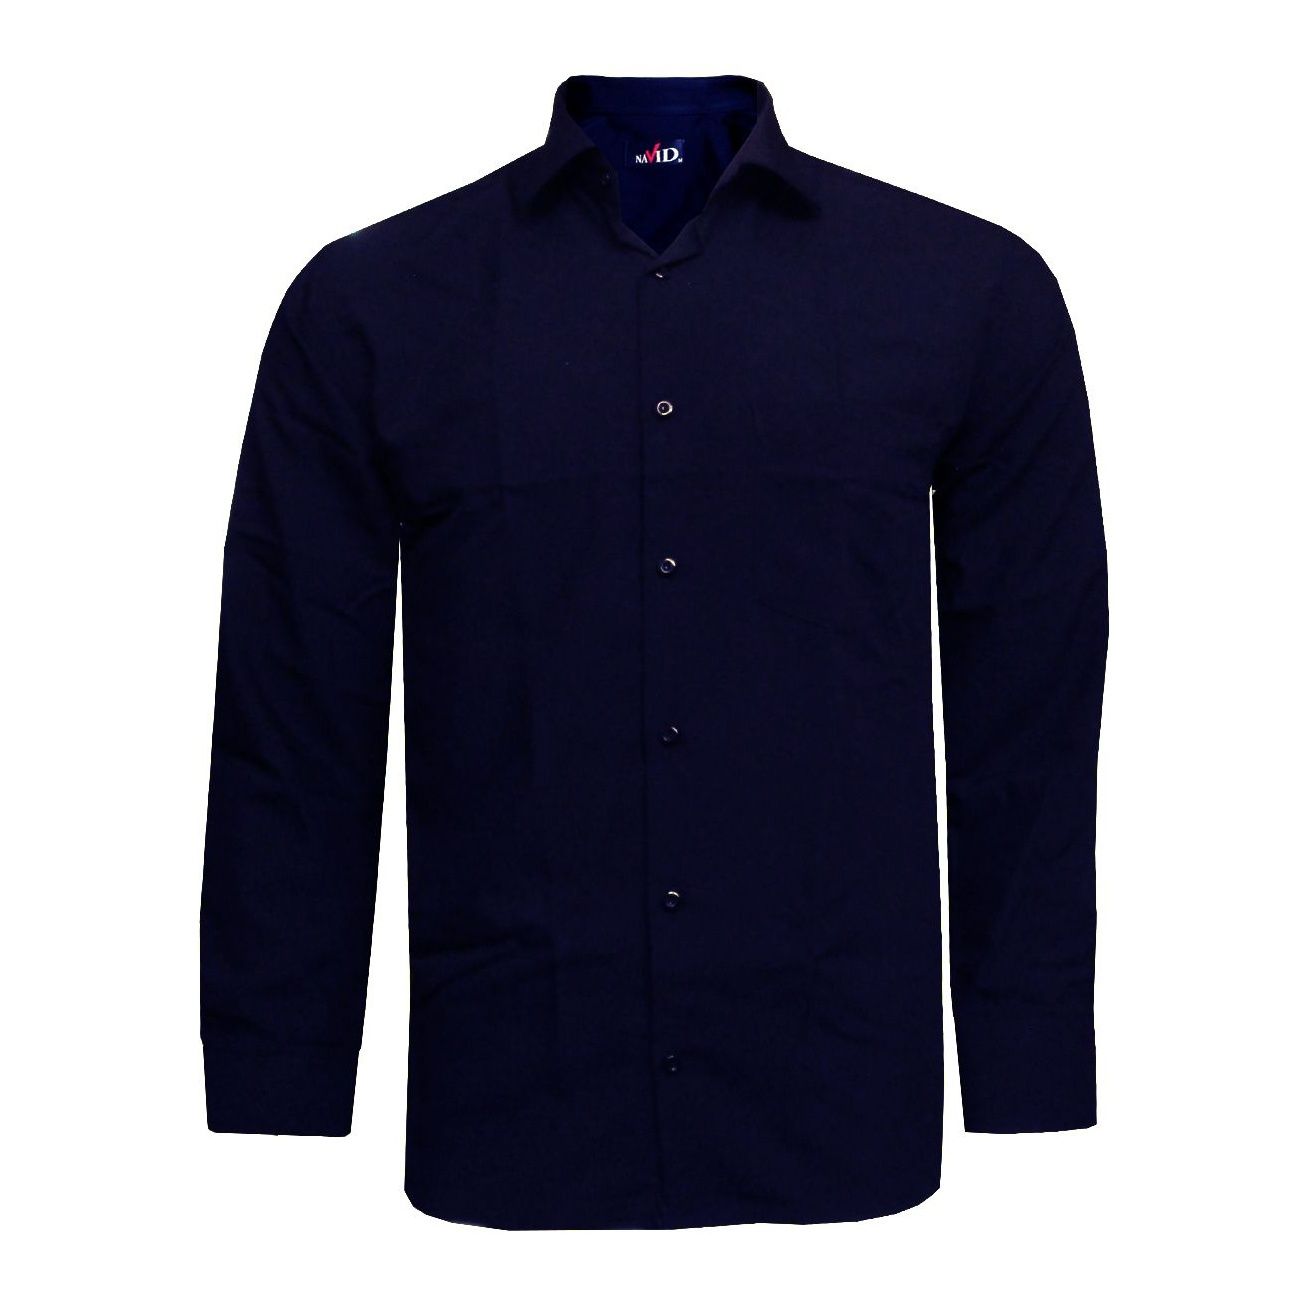 پیراهن مردانه نوید مدل TET-DAK کد 20305 رنگ نیلی